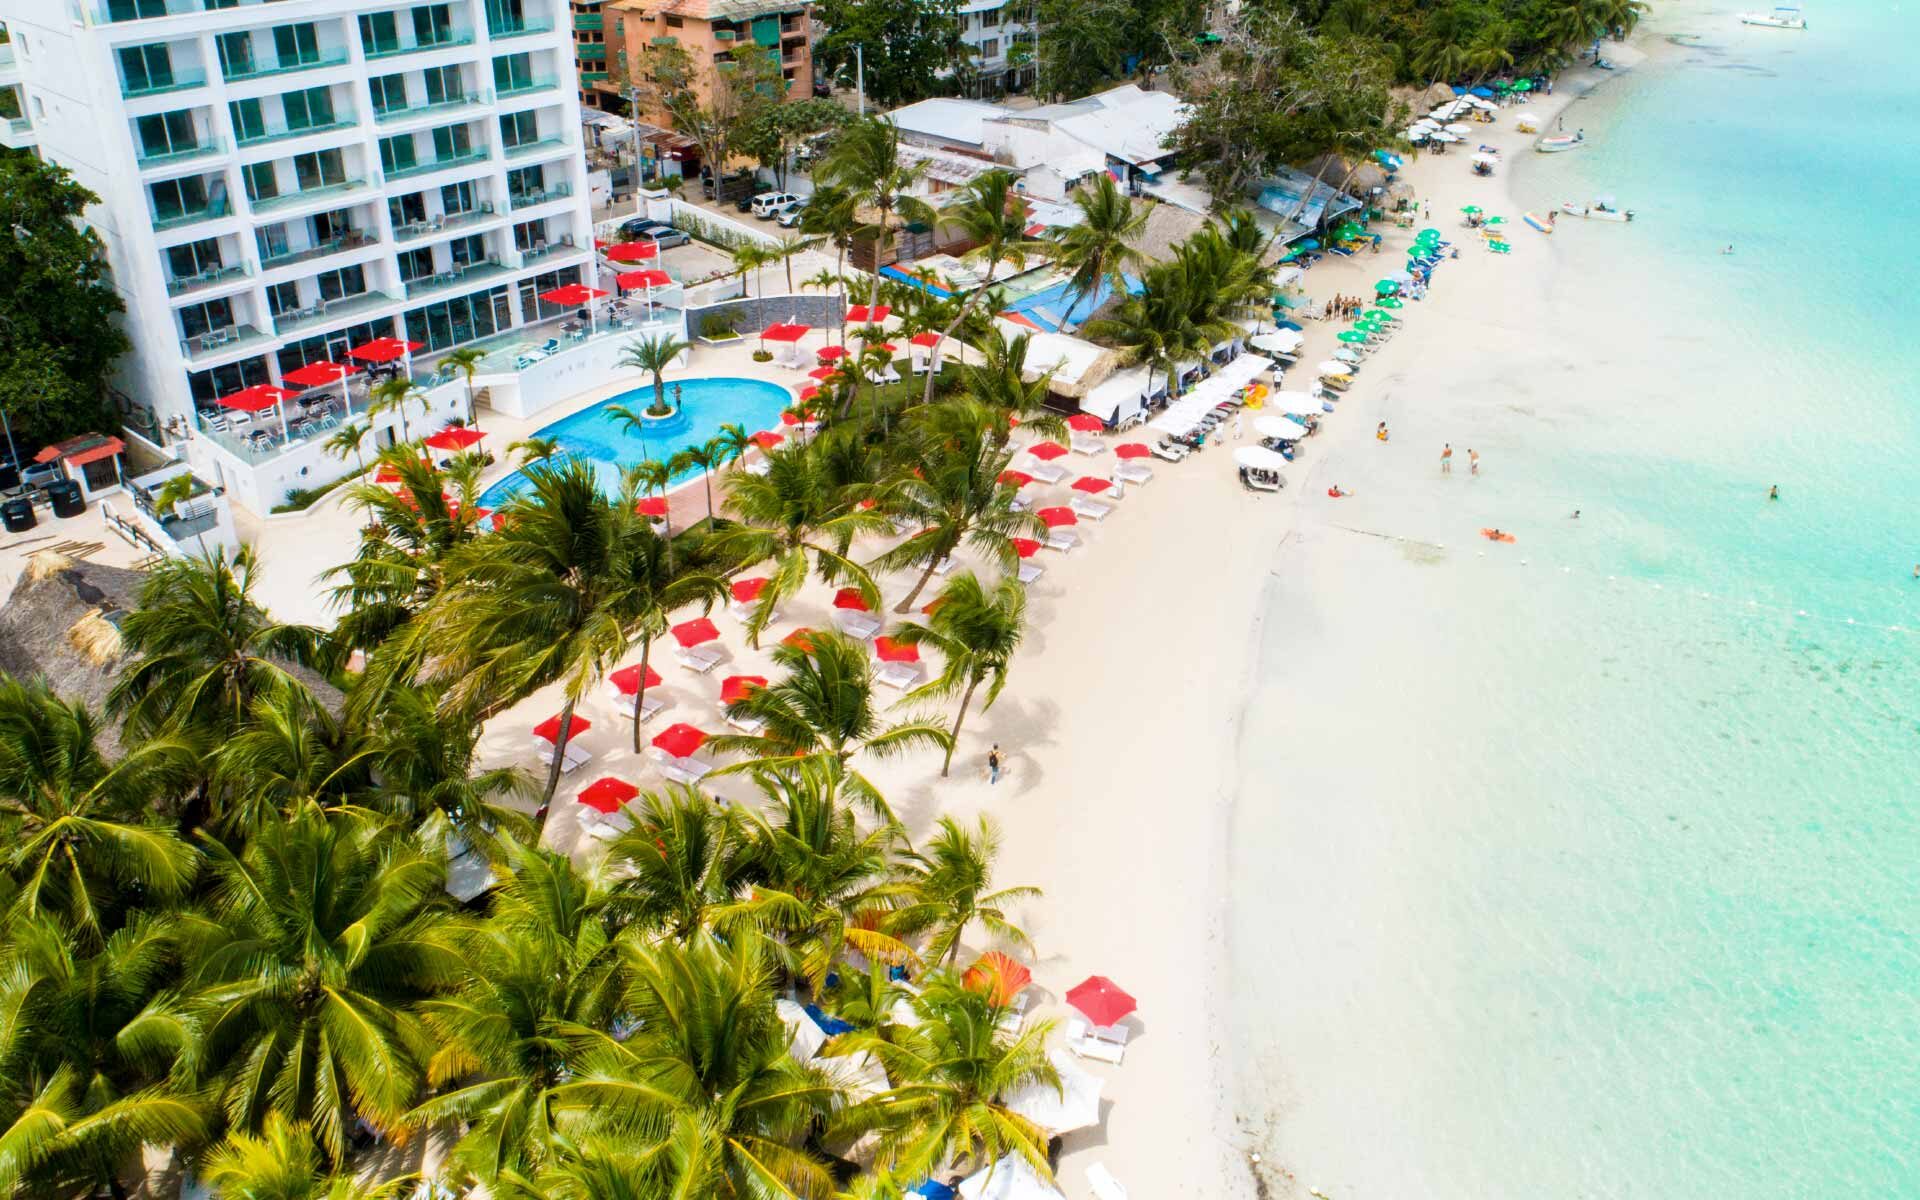 Perchè scegliere un soggiorno al Boca Beach residence Hotel?